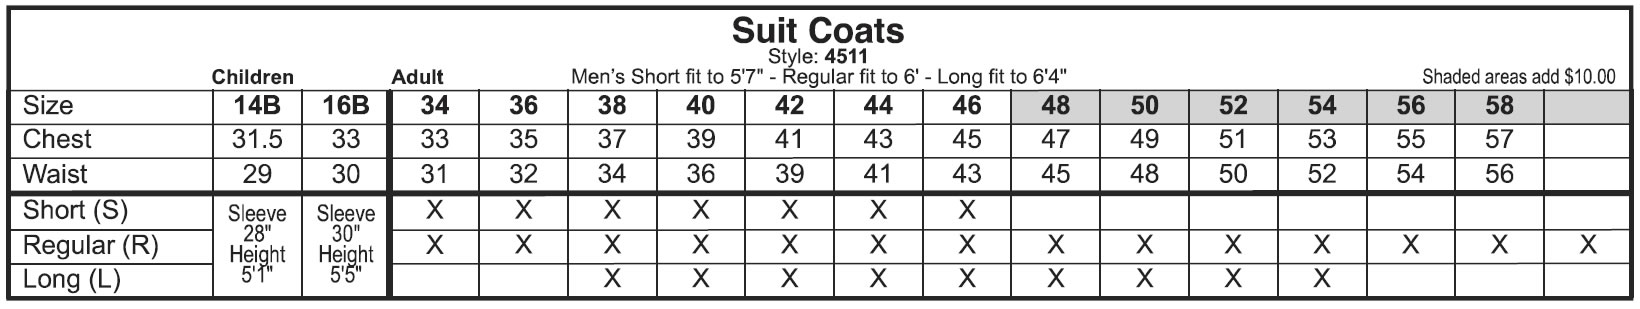 Suit Coats Size Chart